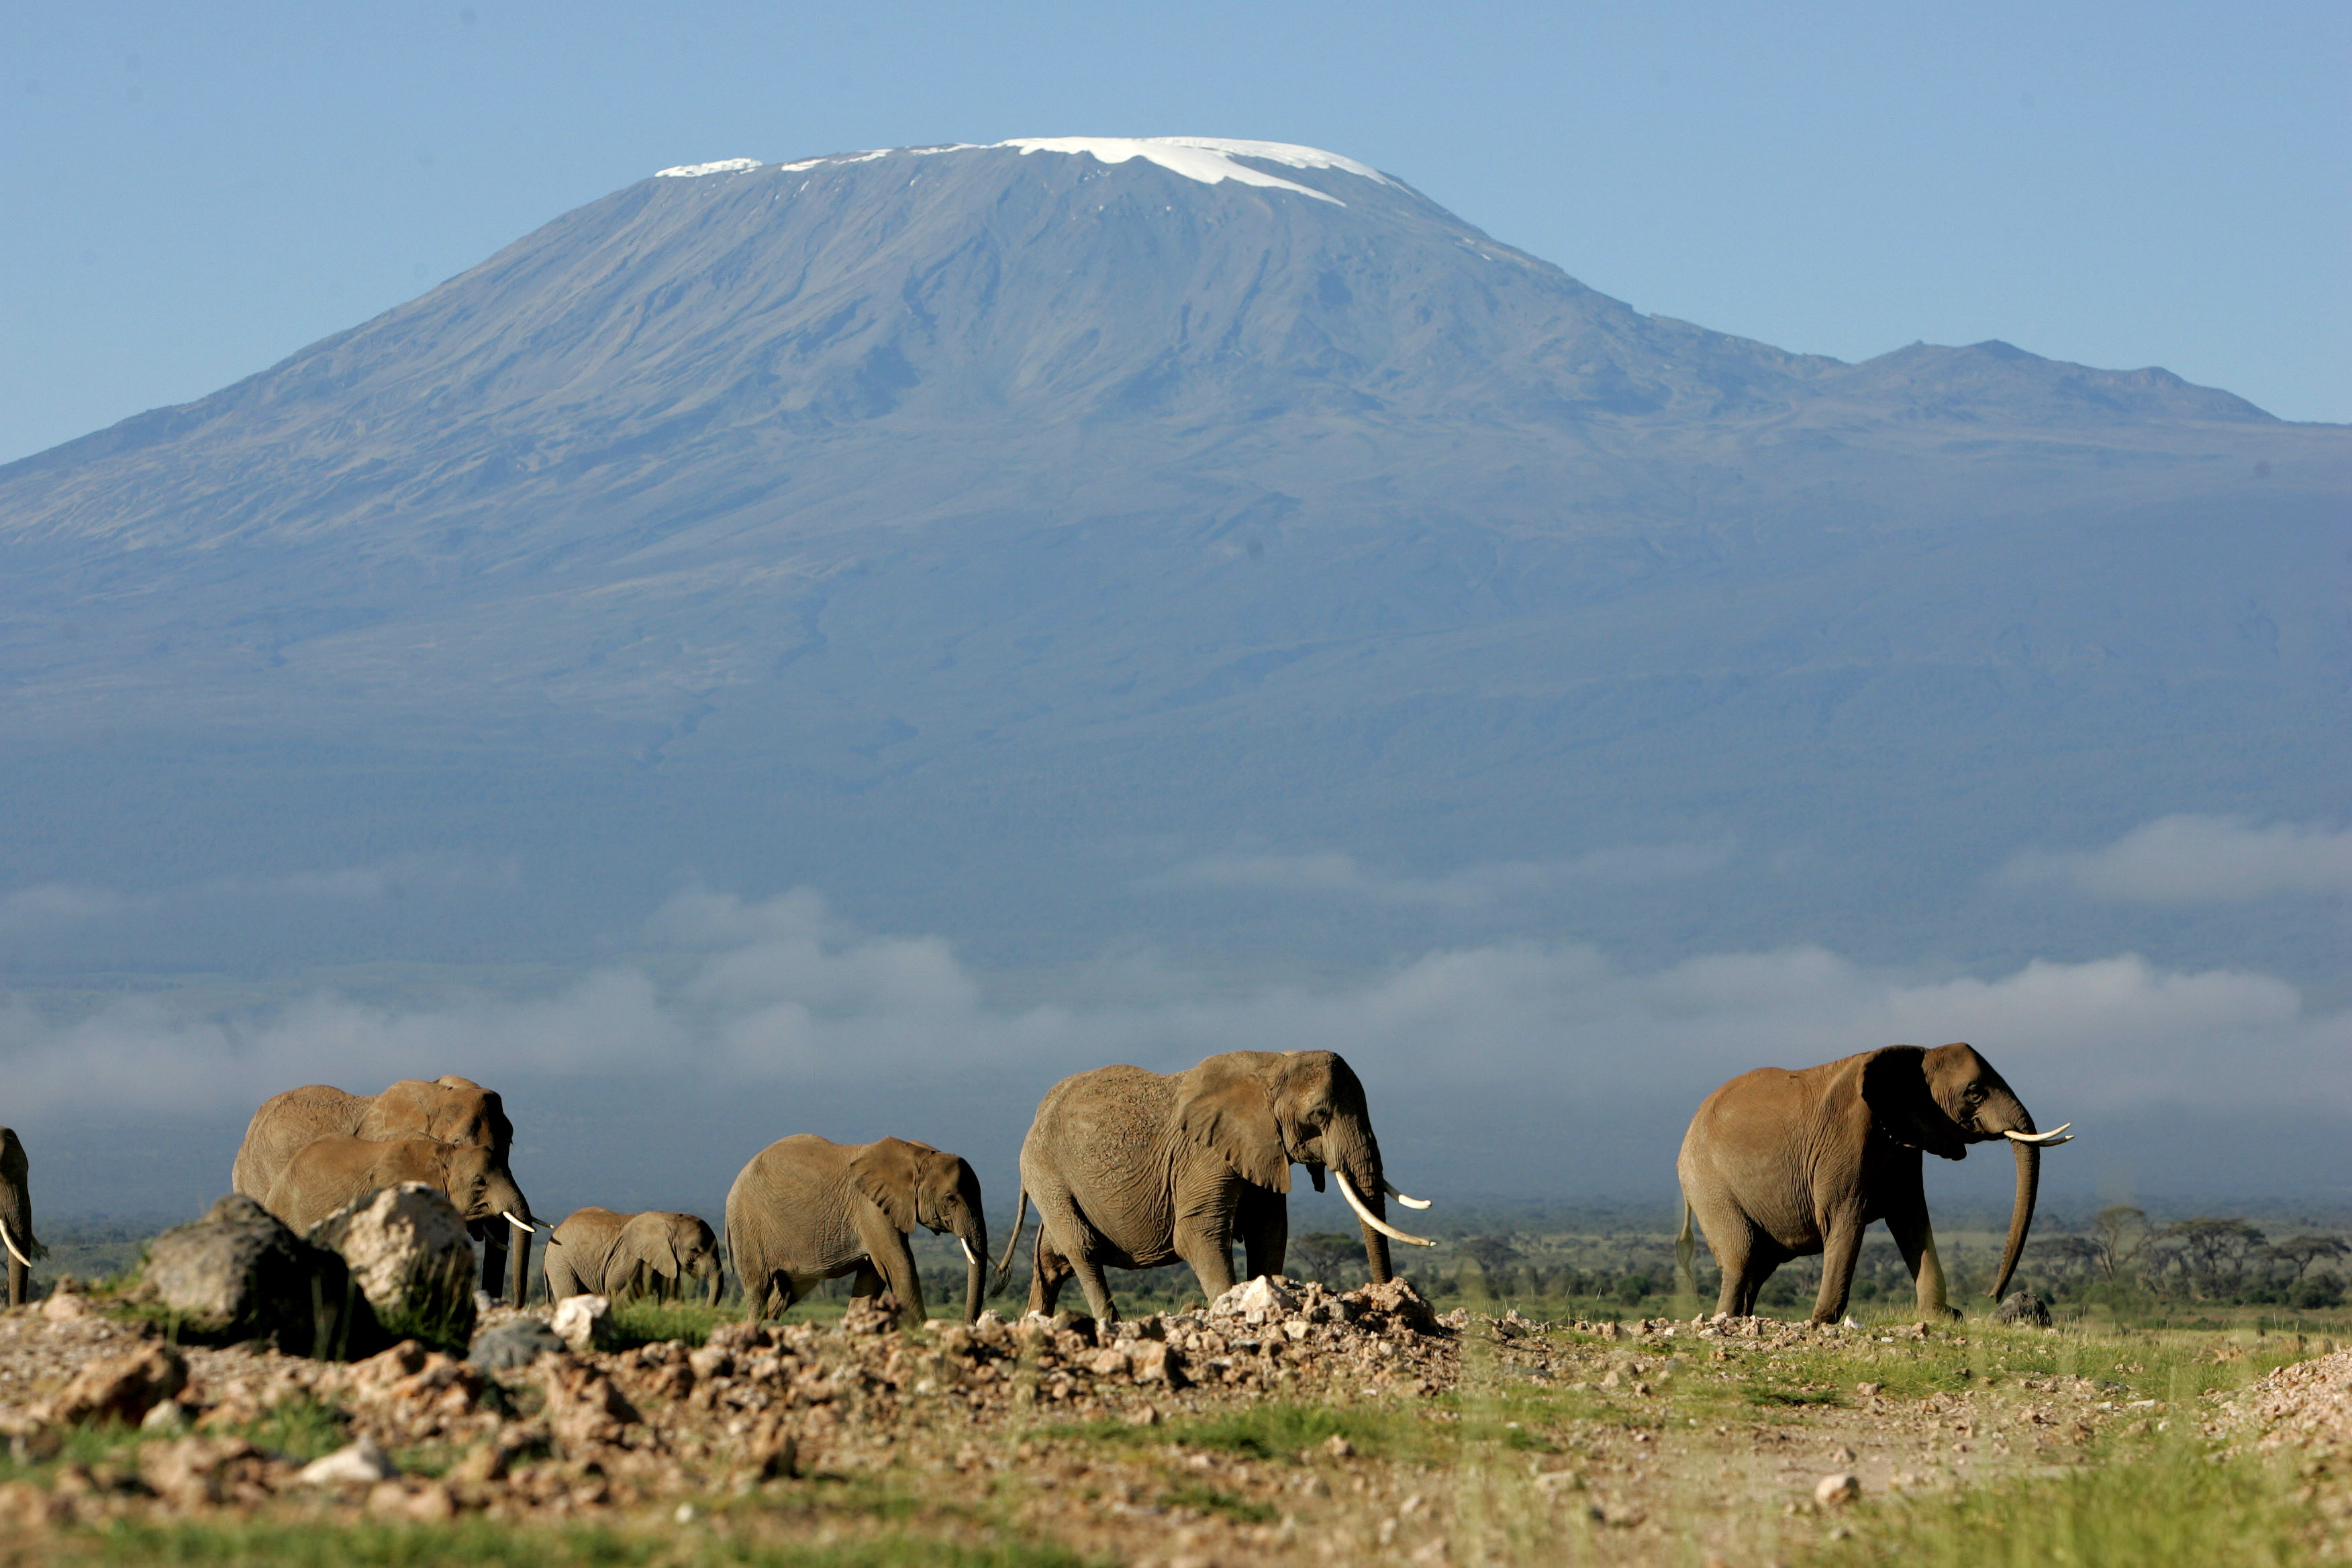 Berg, Bergsbestigare, Klättra, Klättring, Kilimanjaro